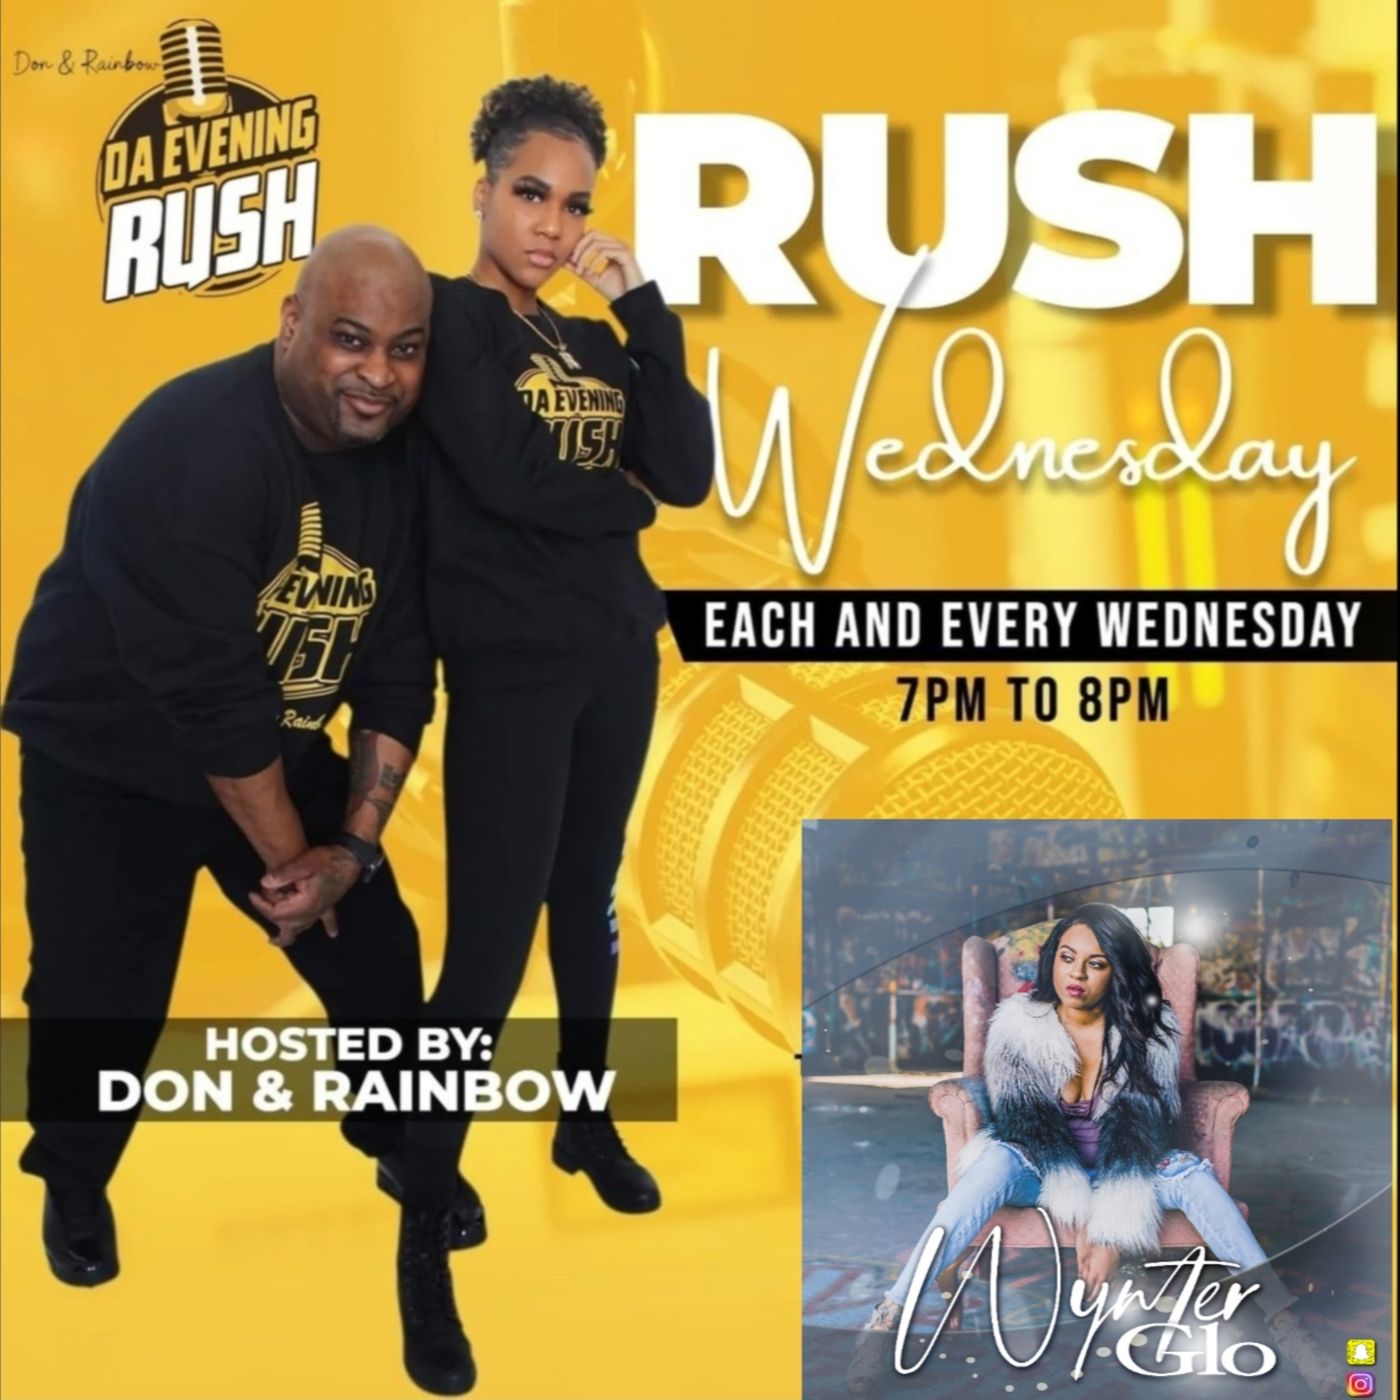 Rush Wednesday : Live Interview W/ Singer & Artist Wynter Glo